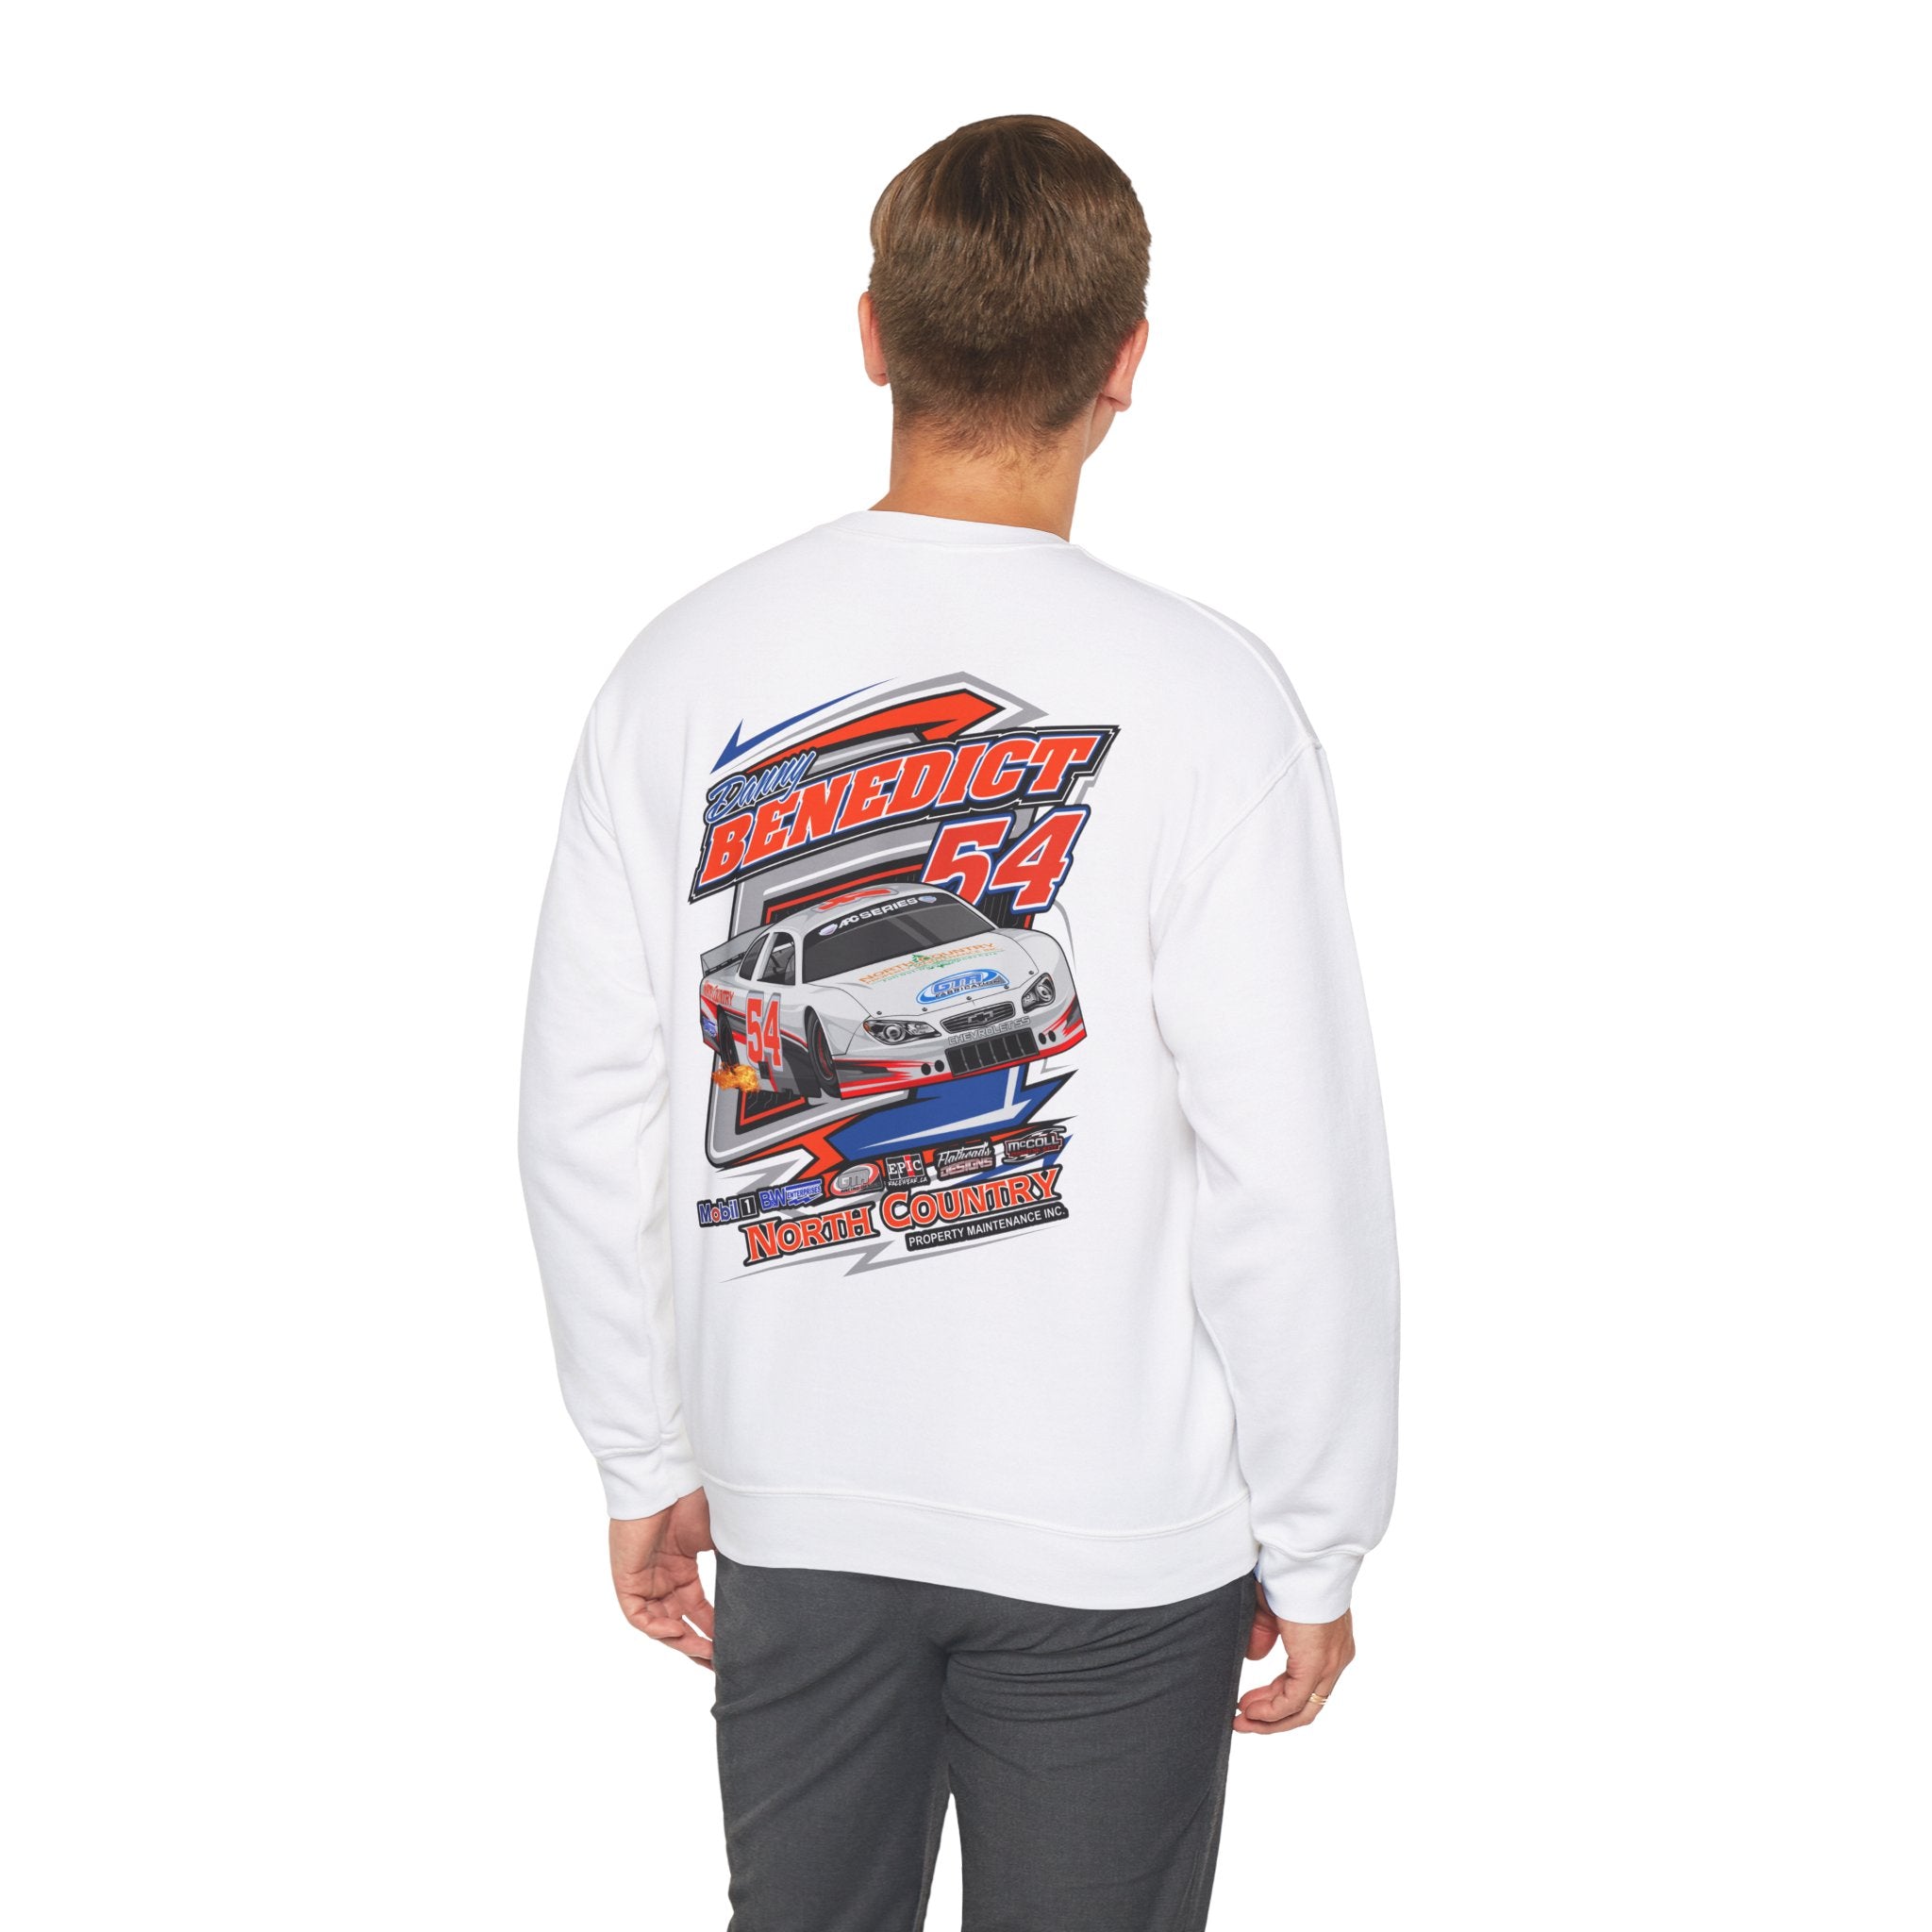 Danny Benedict Racing Crew Neck Sweater